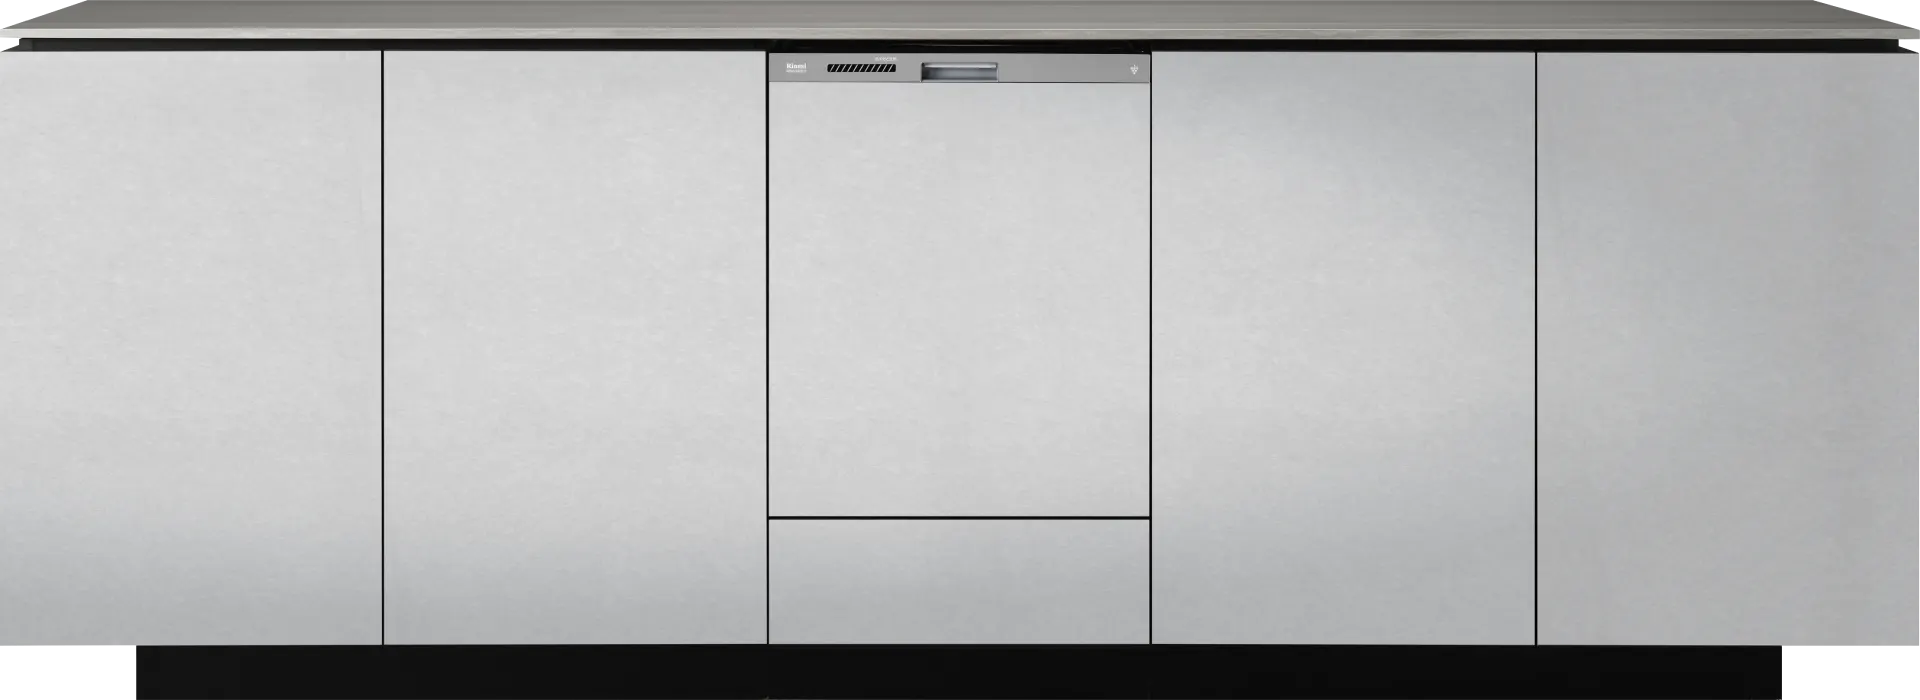 リンナイ 食器洗い乾燥機 約4人分 幅45cm スライドオープンタイプ（深型） ミドルグレード ステンレス調 ビルトイン  - 2